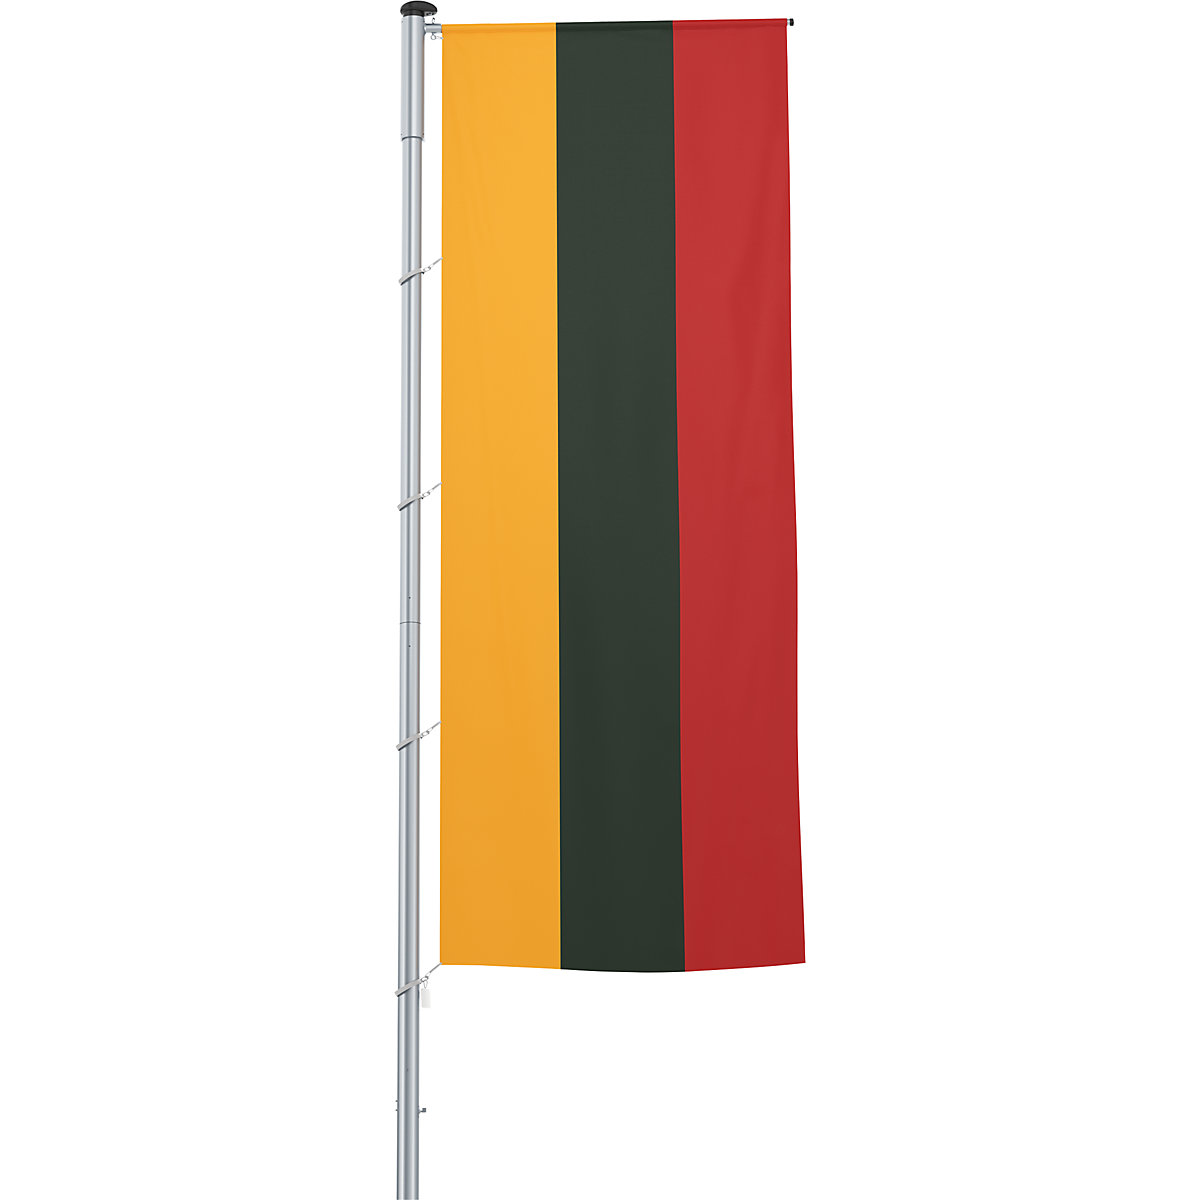 Mastvlag/landvlag – Mannus, formaat 1,2 x 3 m, Litouwen-20